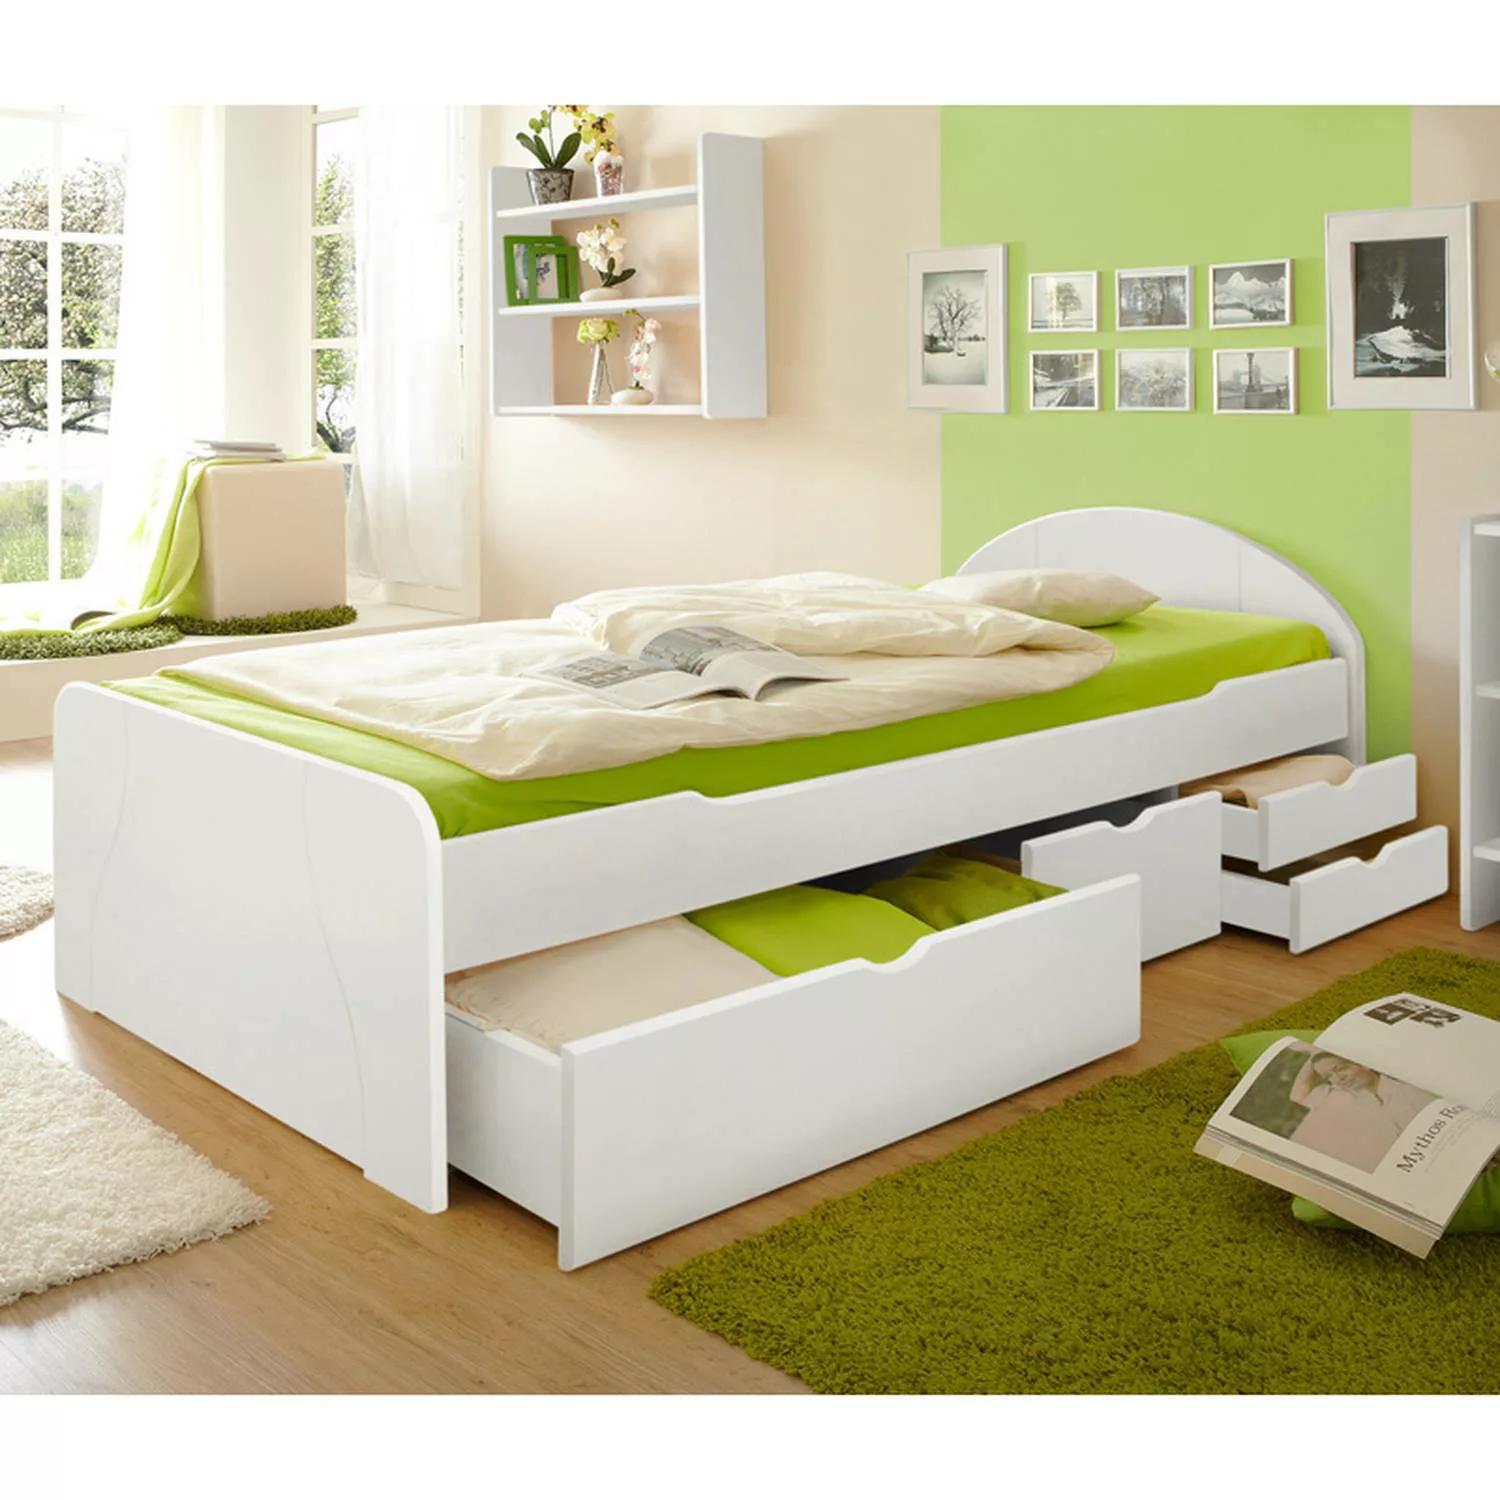 Schubkastenbett Jugendbett 90x200cm GENF-22 Kiefer massiv weiß B99 x H70/50 günstig online kaufen